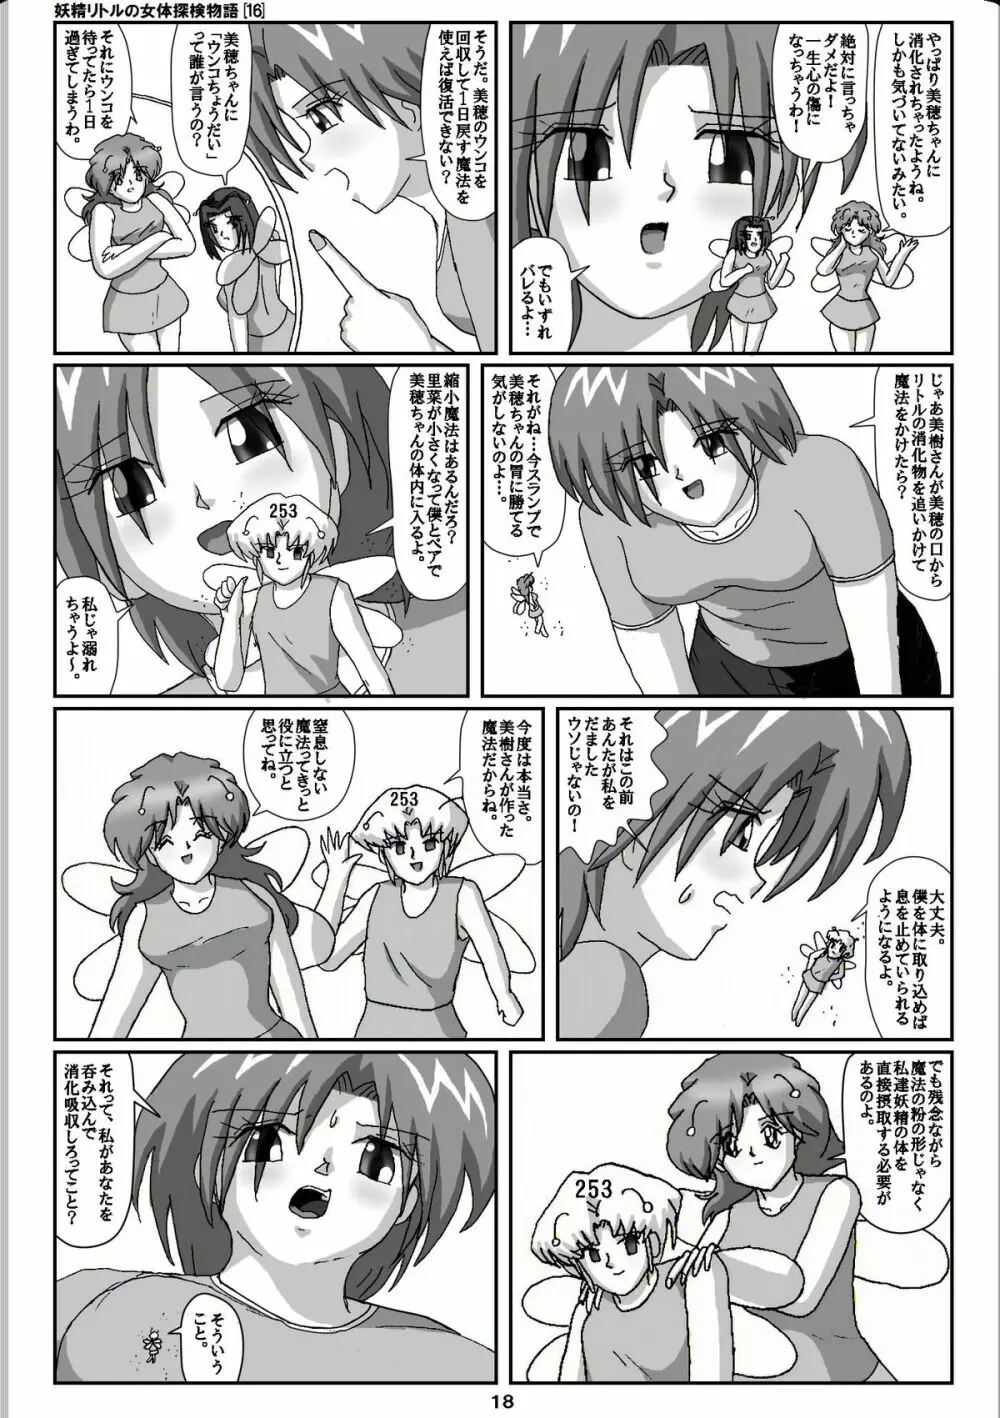 妖精リトルの女体探検物語 16 18ページ